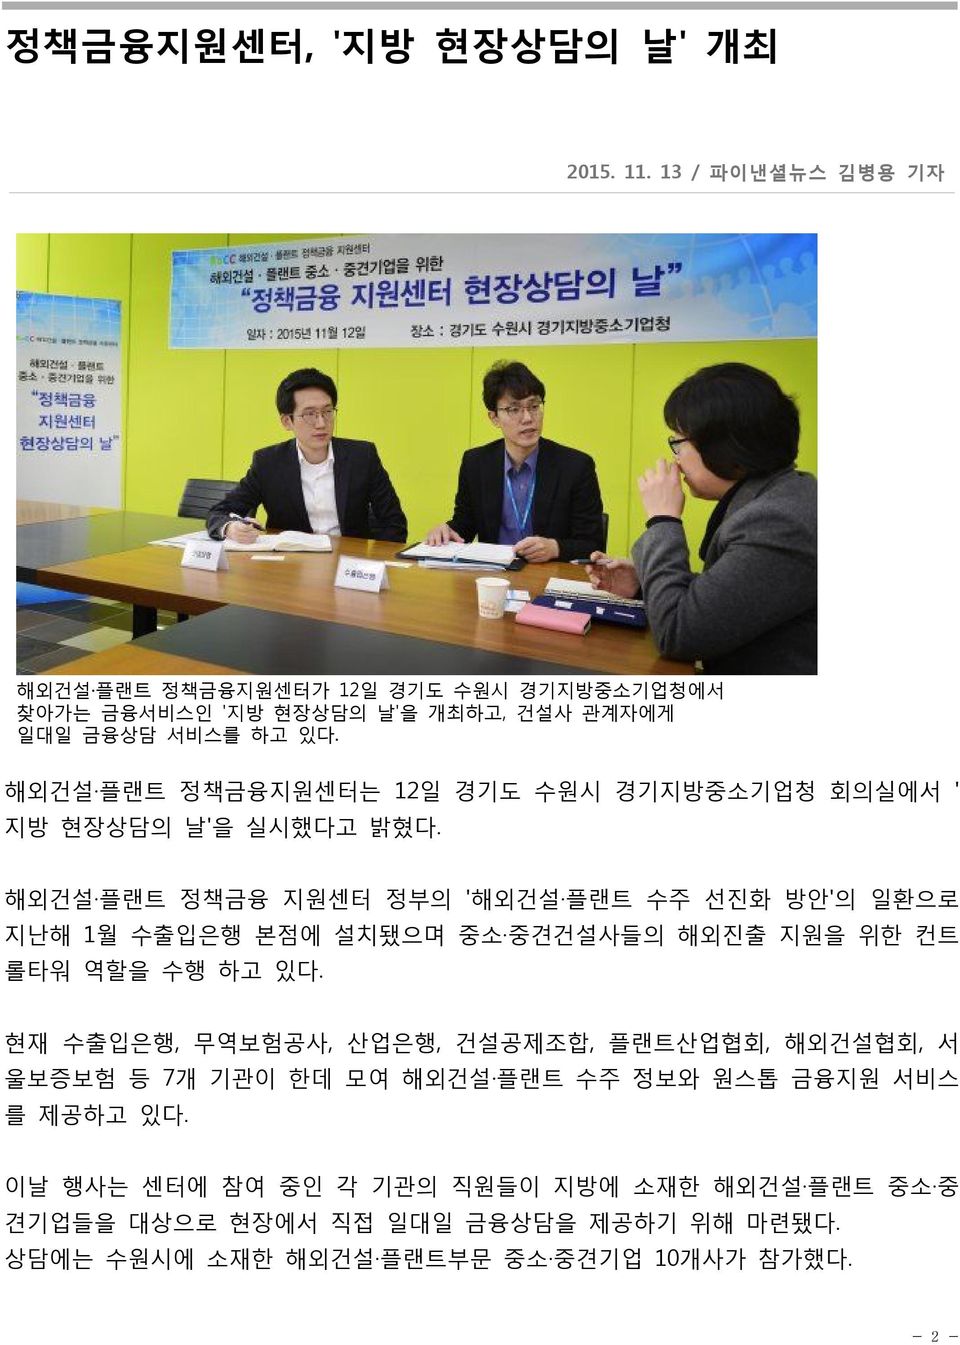 해외건설 플랜트 정책금융지원센터는 12일 경기도 수원시 경기지방중소기업청 회의실에서 ' 지방 현장상담의 날'을 실시했다고 밝혔다.